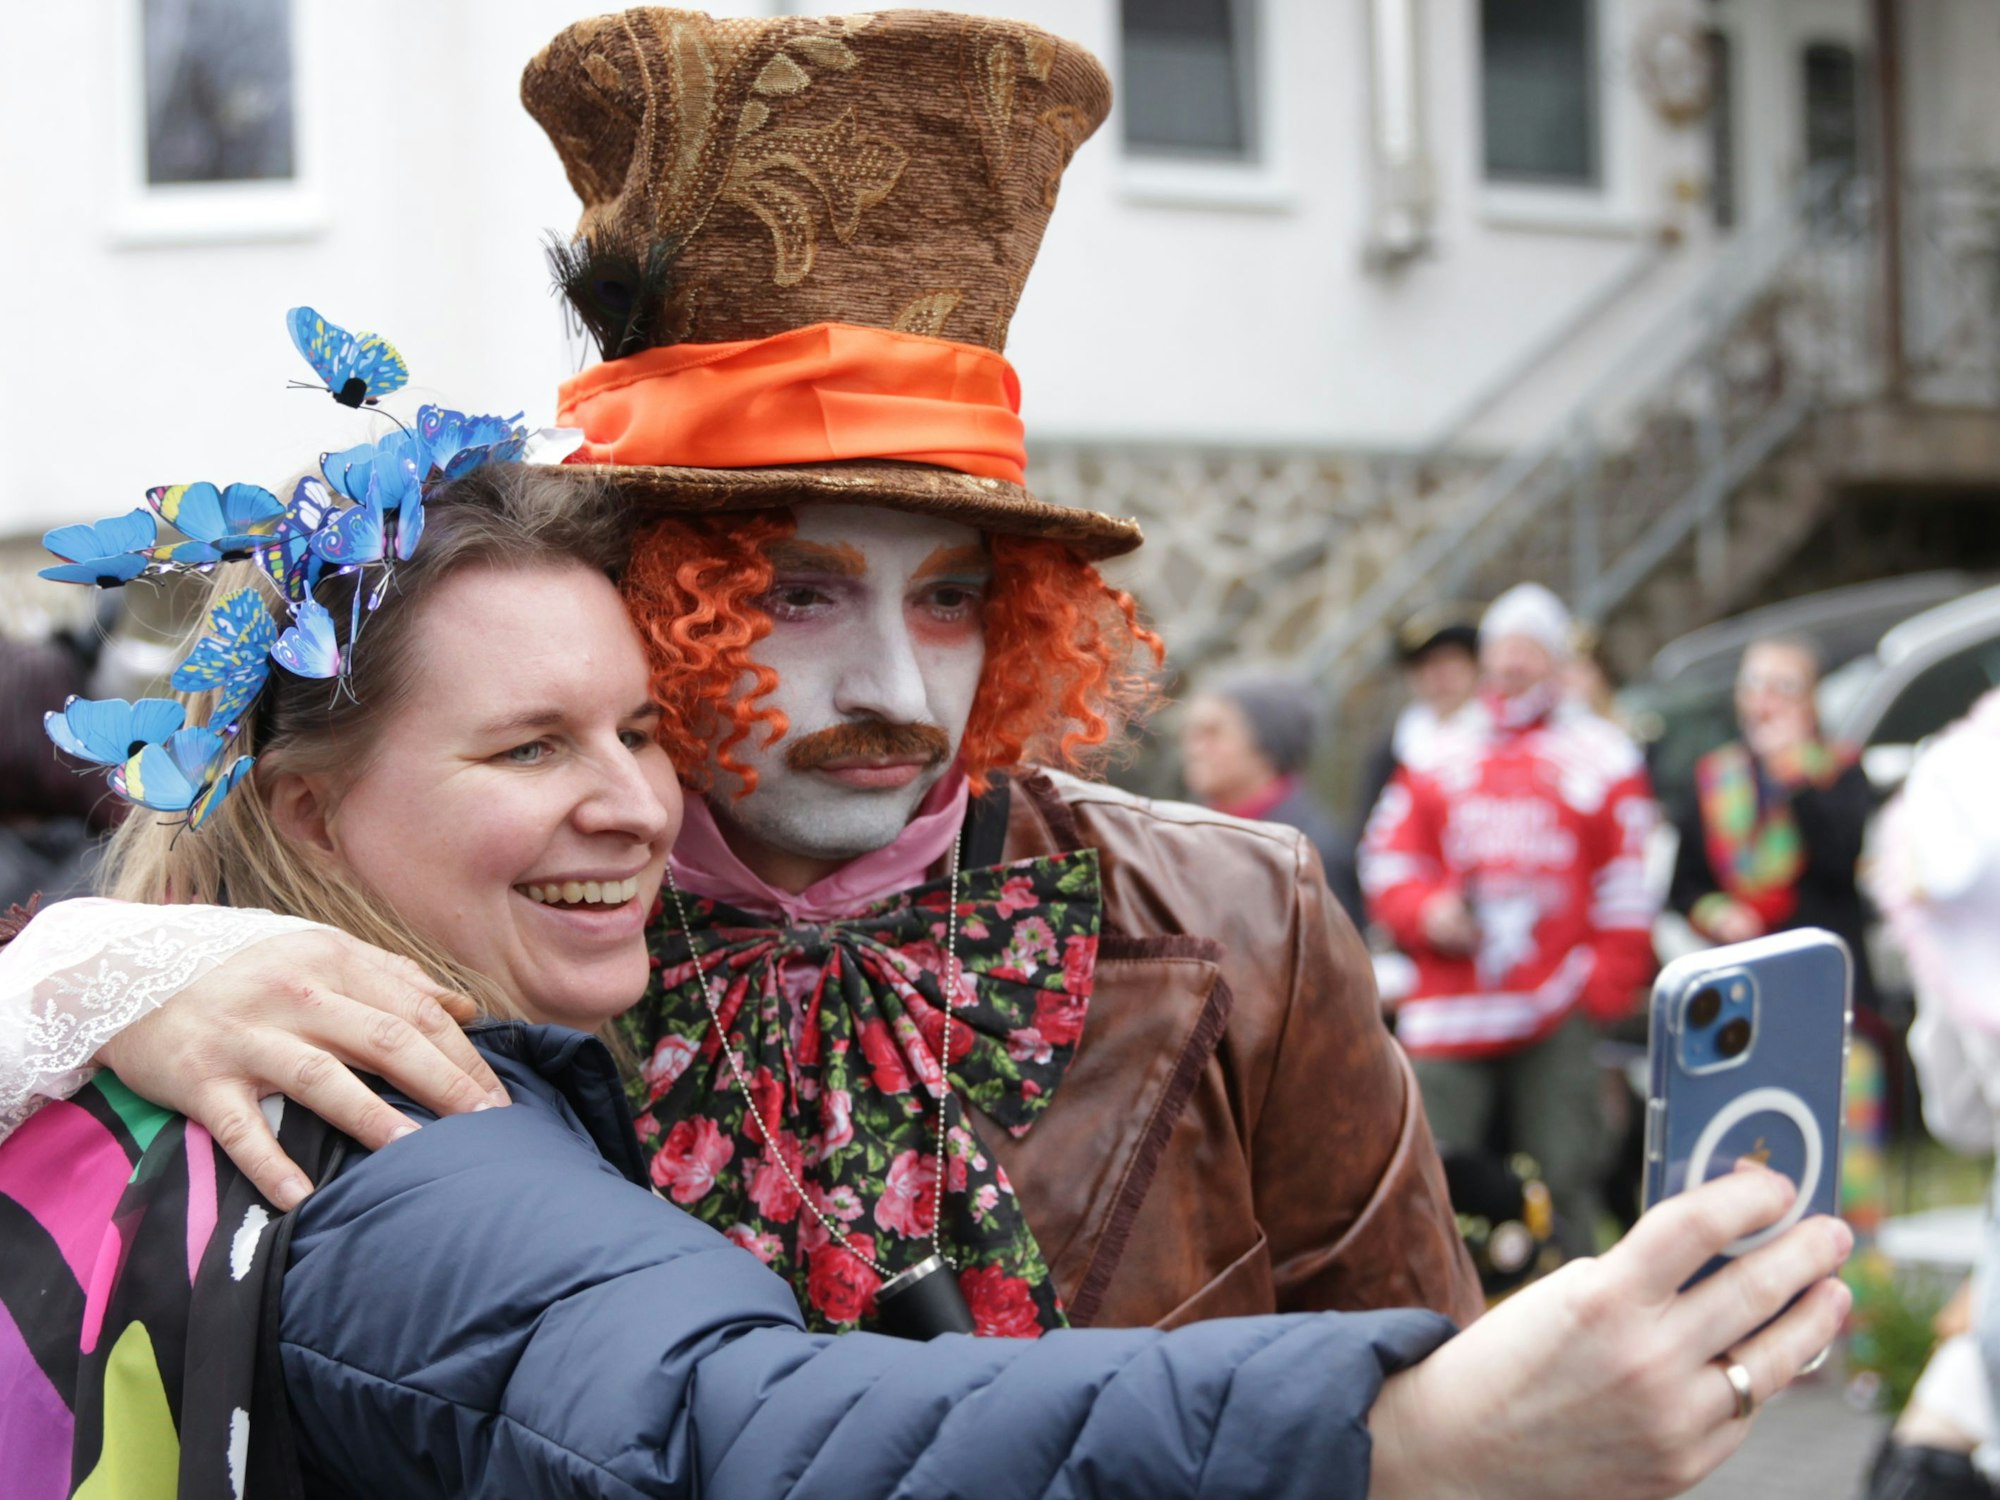 Eine verkleidete Zuschauerin des Vussemer Karnevalszugs macht ein Selfie mit Helmut Sanden, der als verrückter Hutmacher aus Alice im Wunderland kostümiert und geschminkt ist.